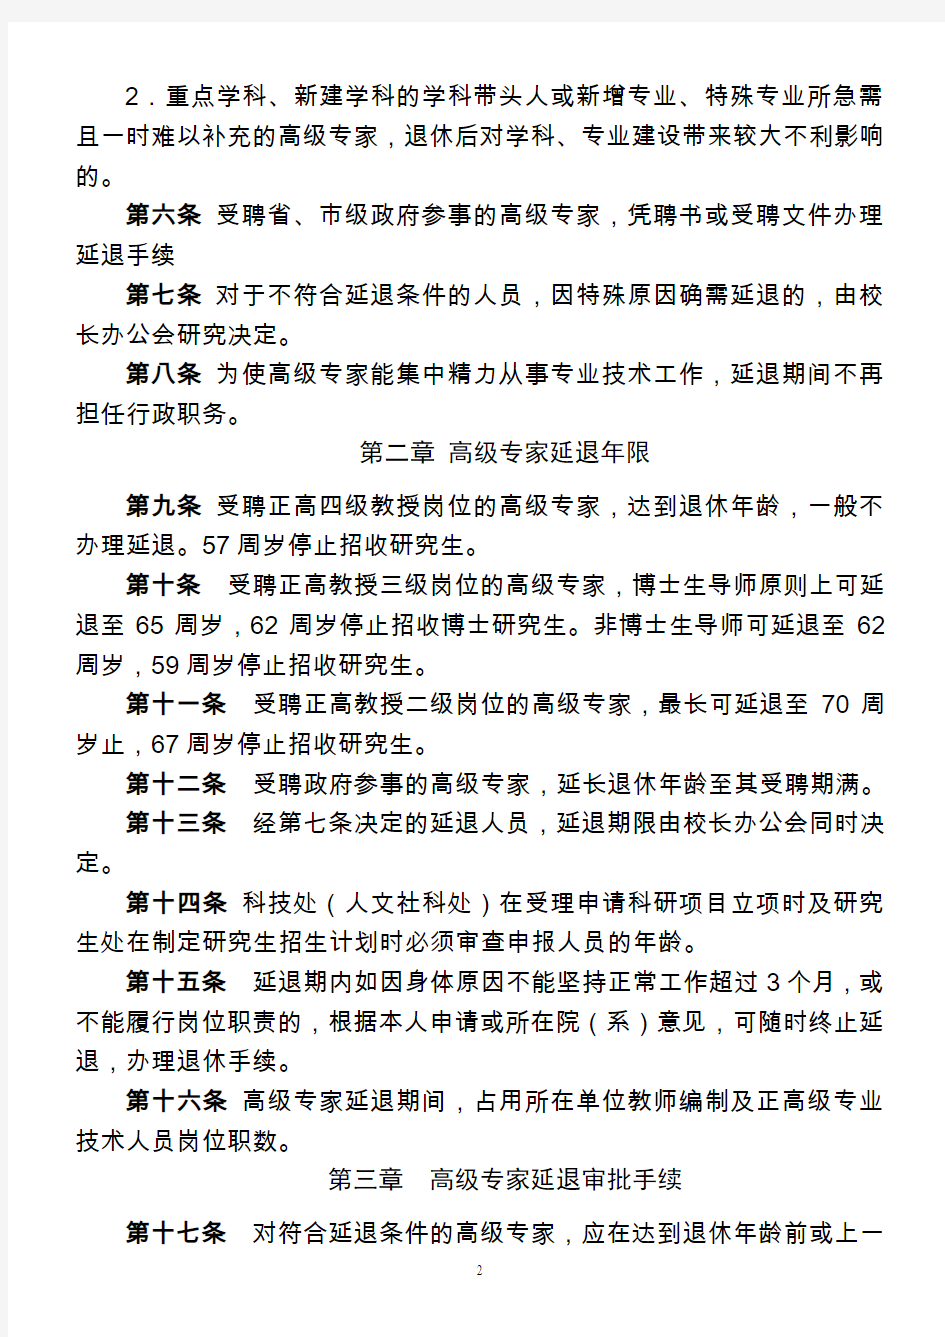 广东工业大学高级专家延长退休年龄管理规定